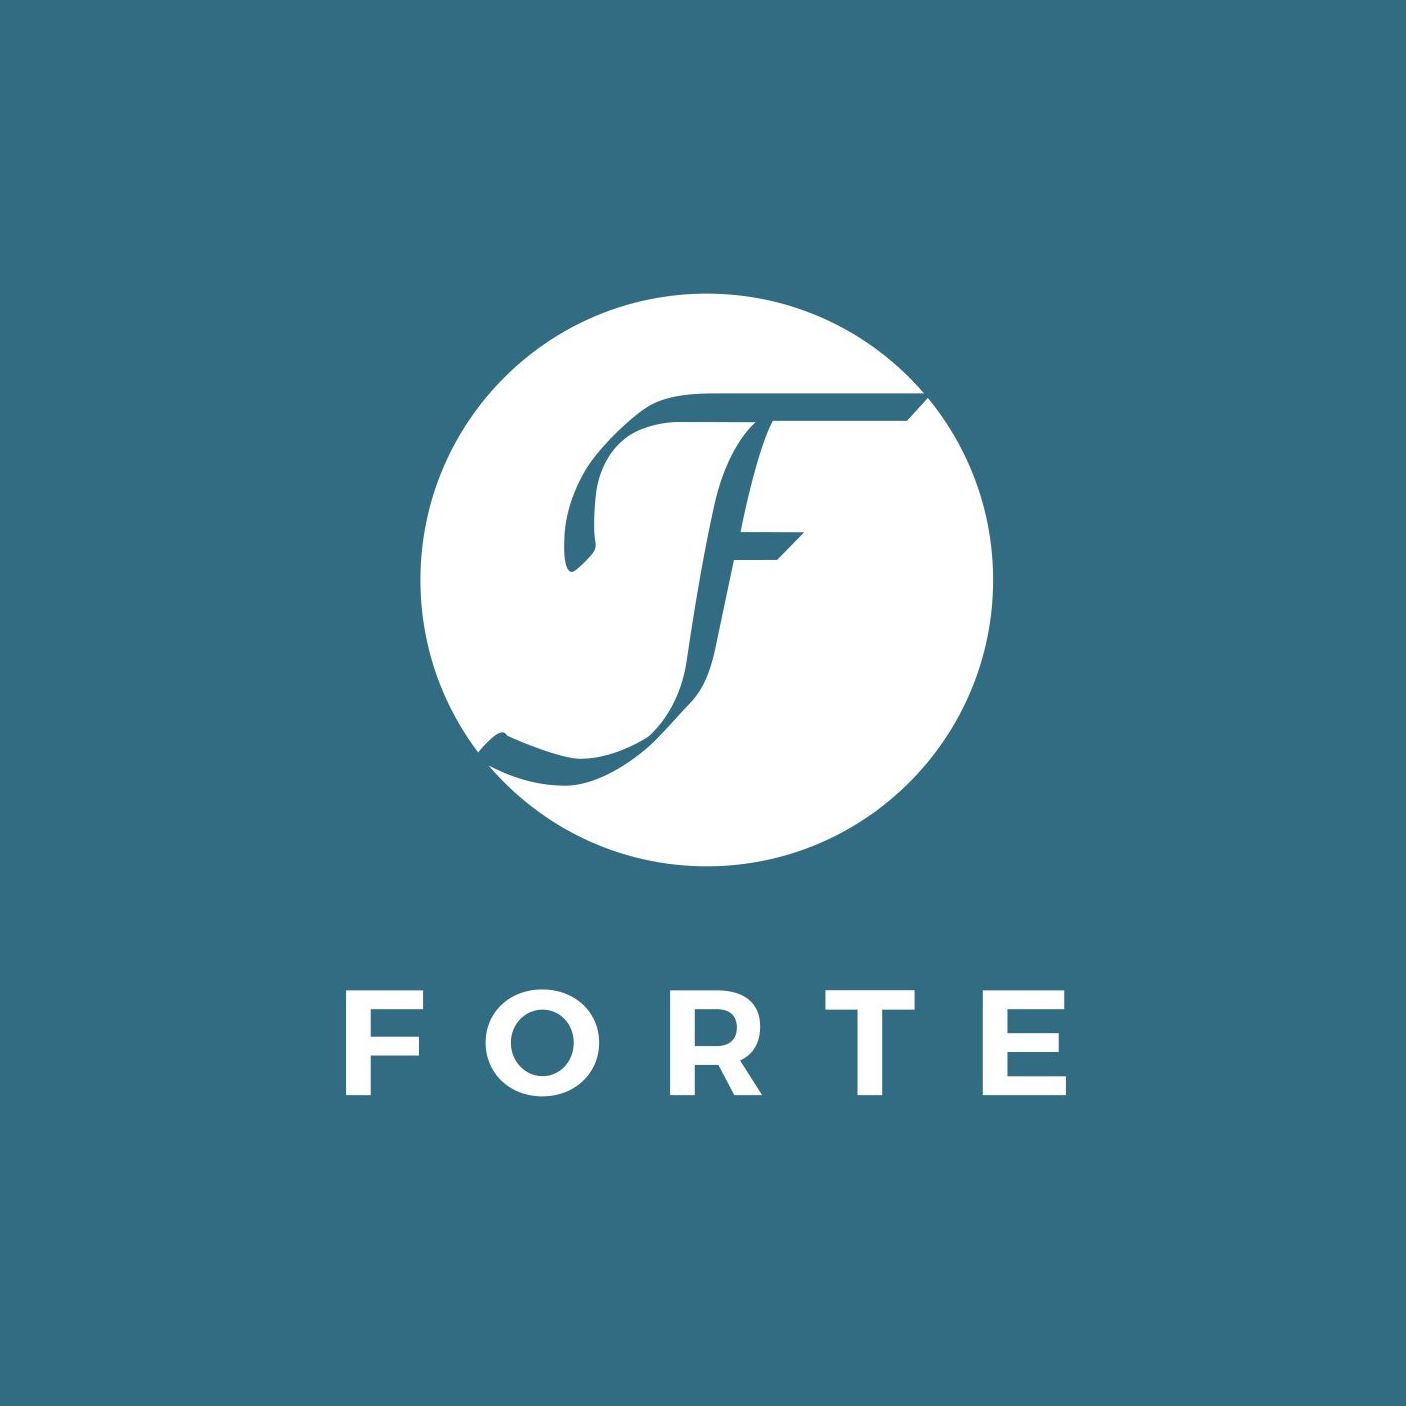 Forte – Reinventure